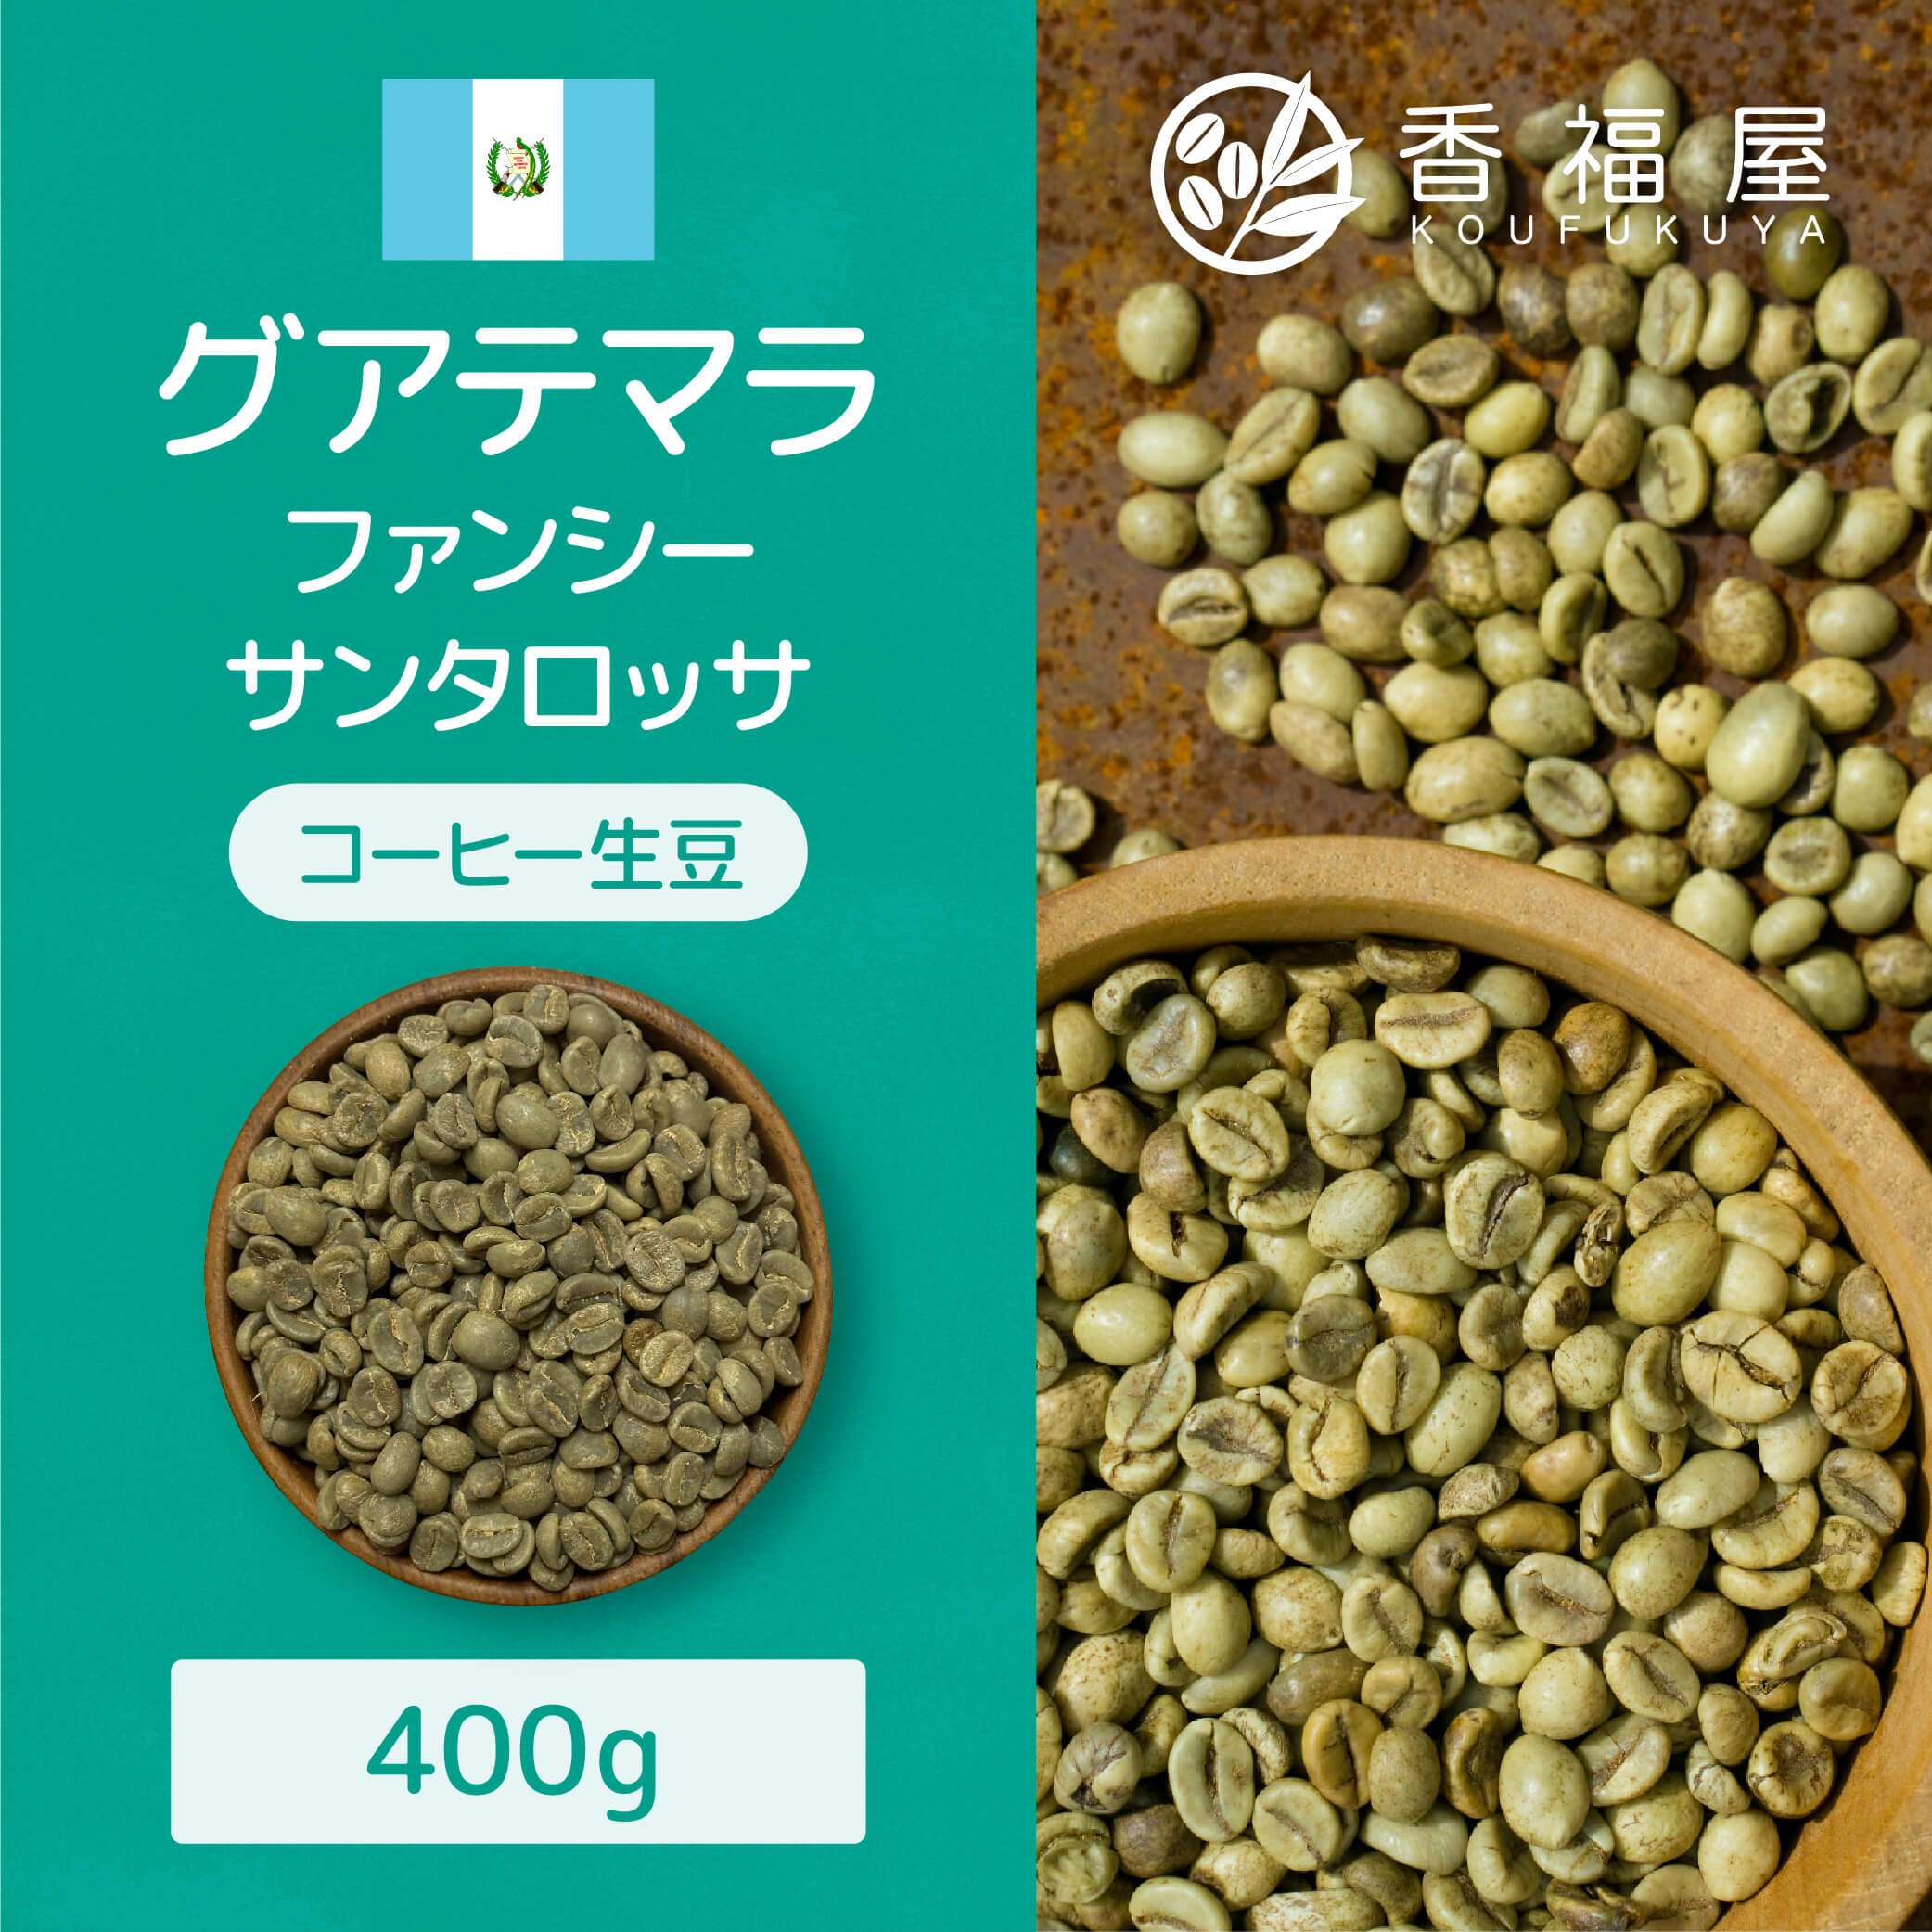 【400g】 コーヒー 生豆 グアテマラ 